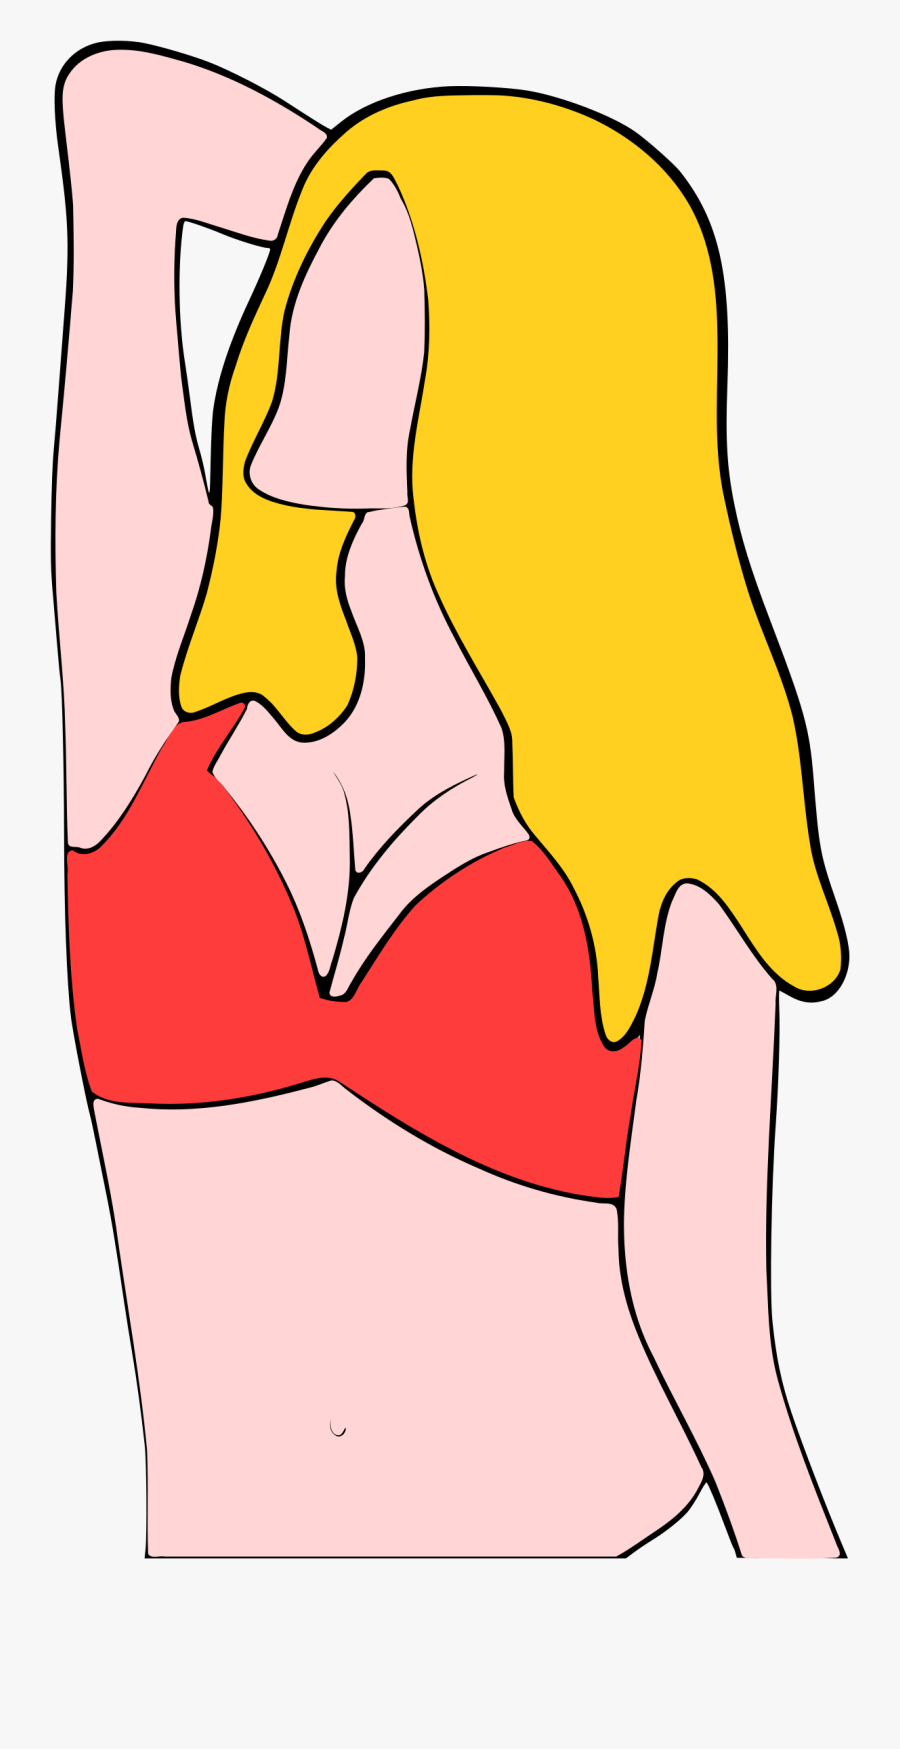 Torso In Bikini - Portable Network Graphics, Transparent Clipart